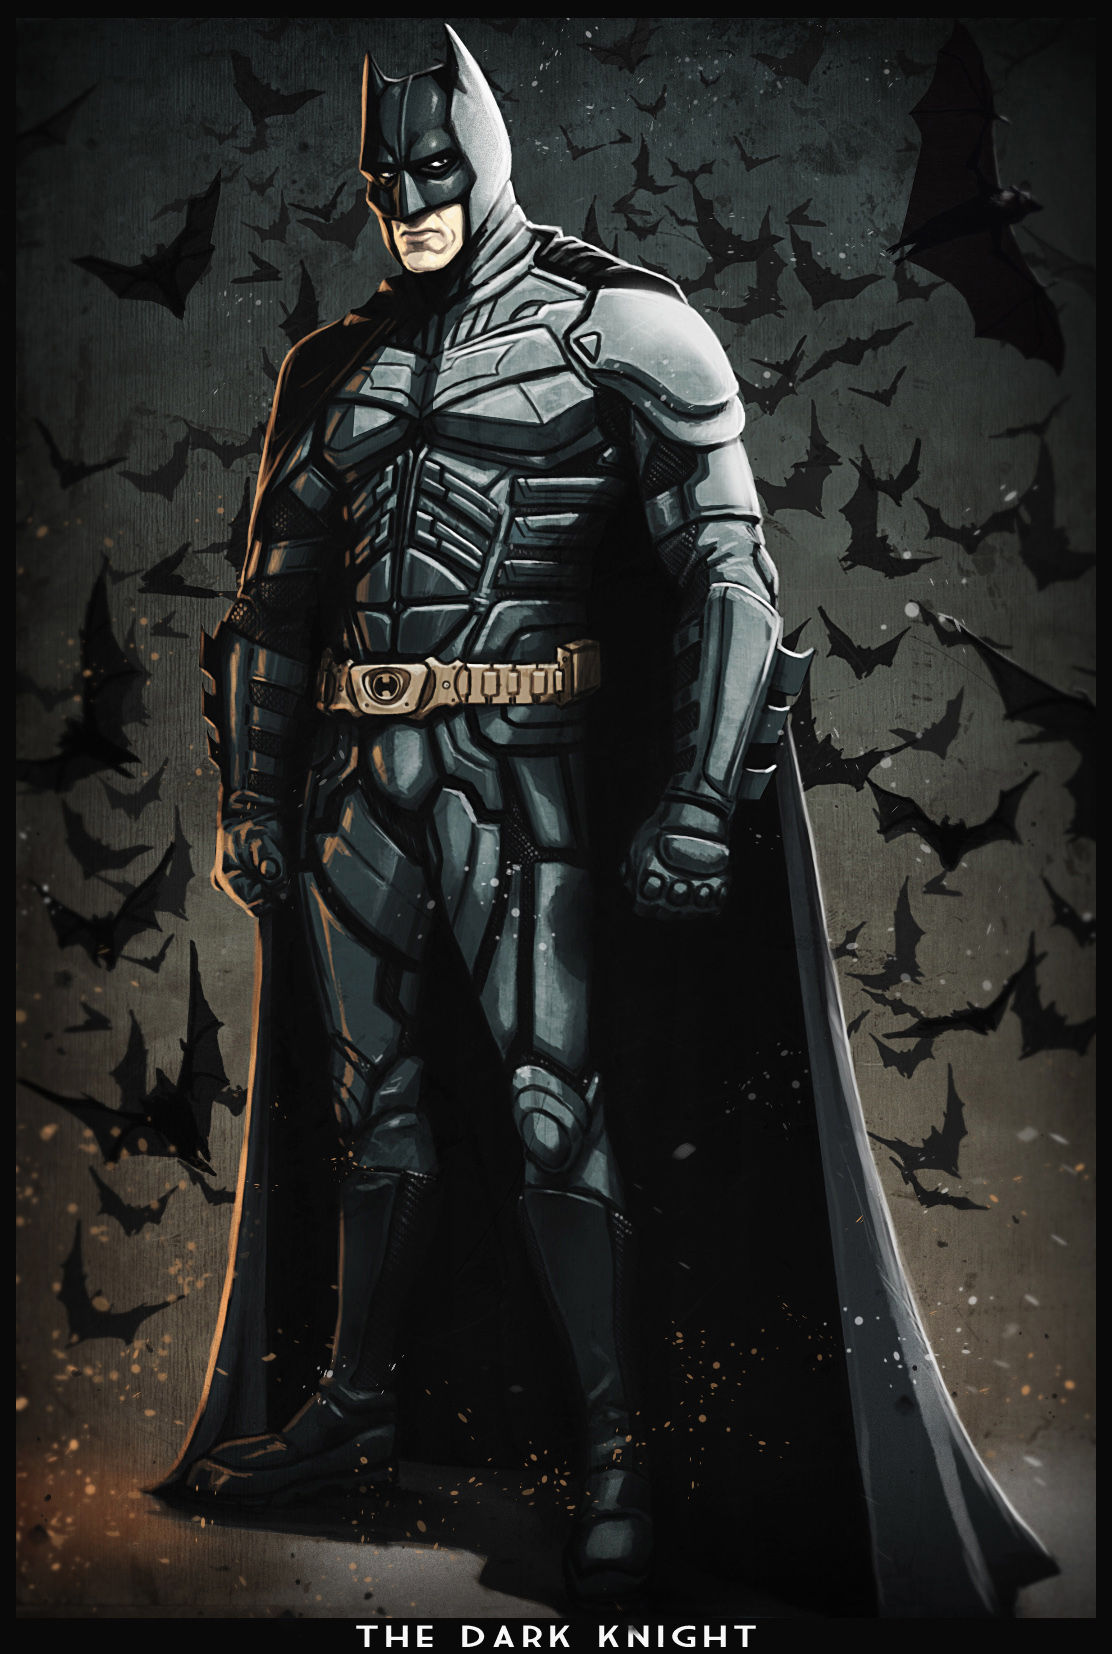 BATMAN the dark knight cartoon version by digitalinkrod on DeviantArt